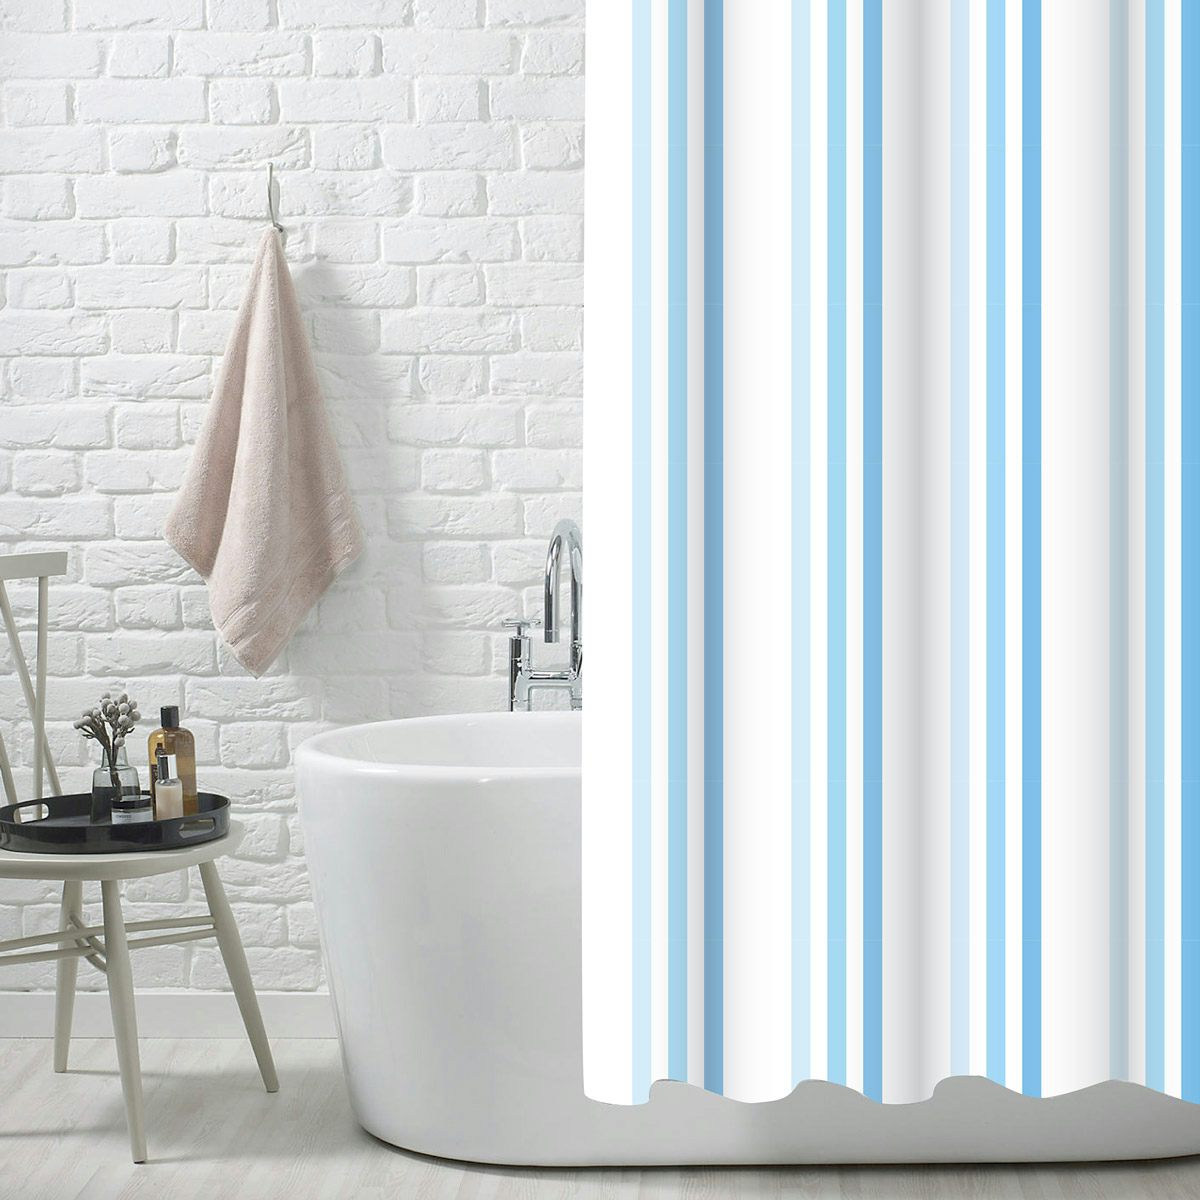 Showerdrape Brighton rock blue polyester shower curtain